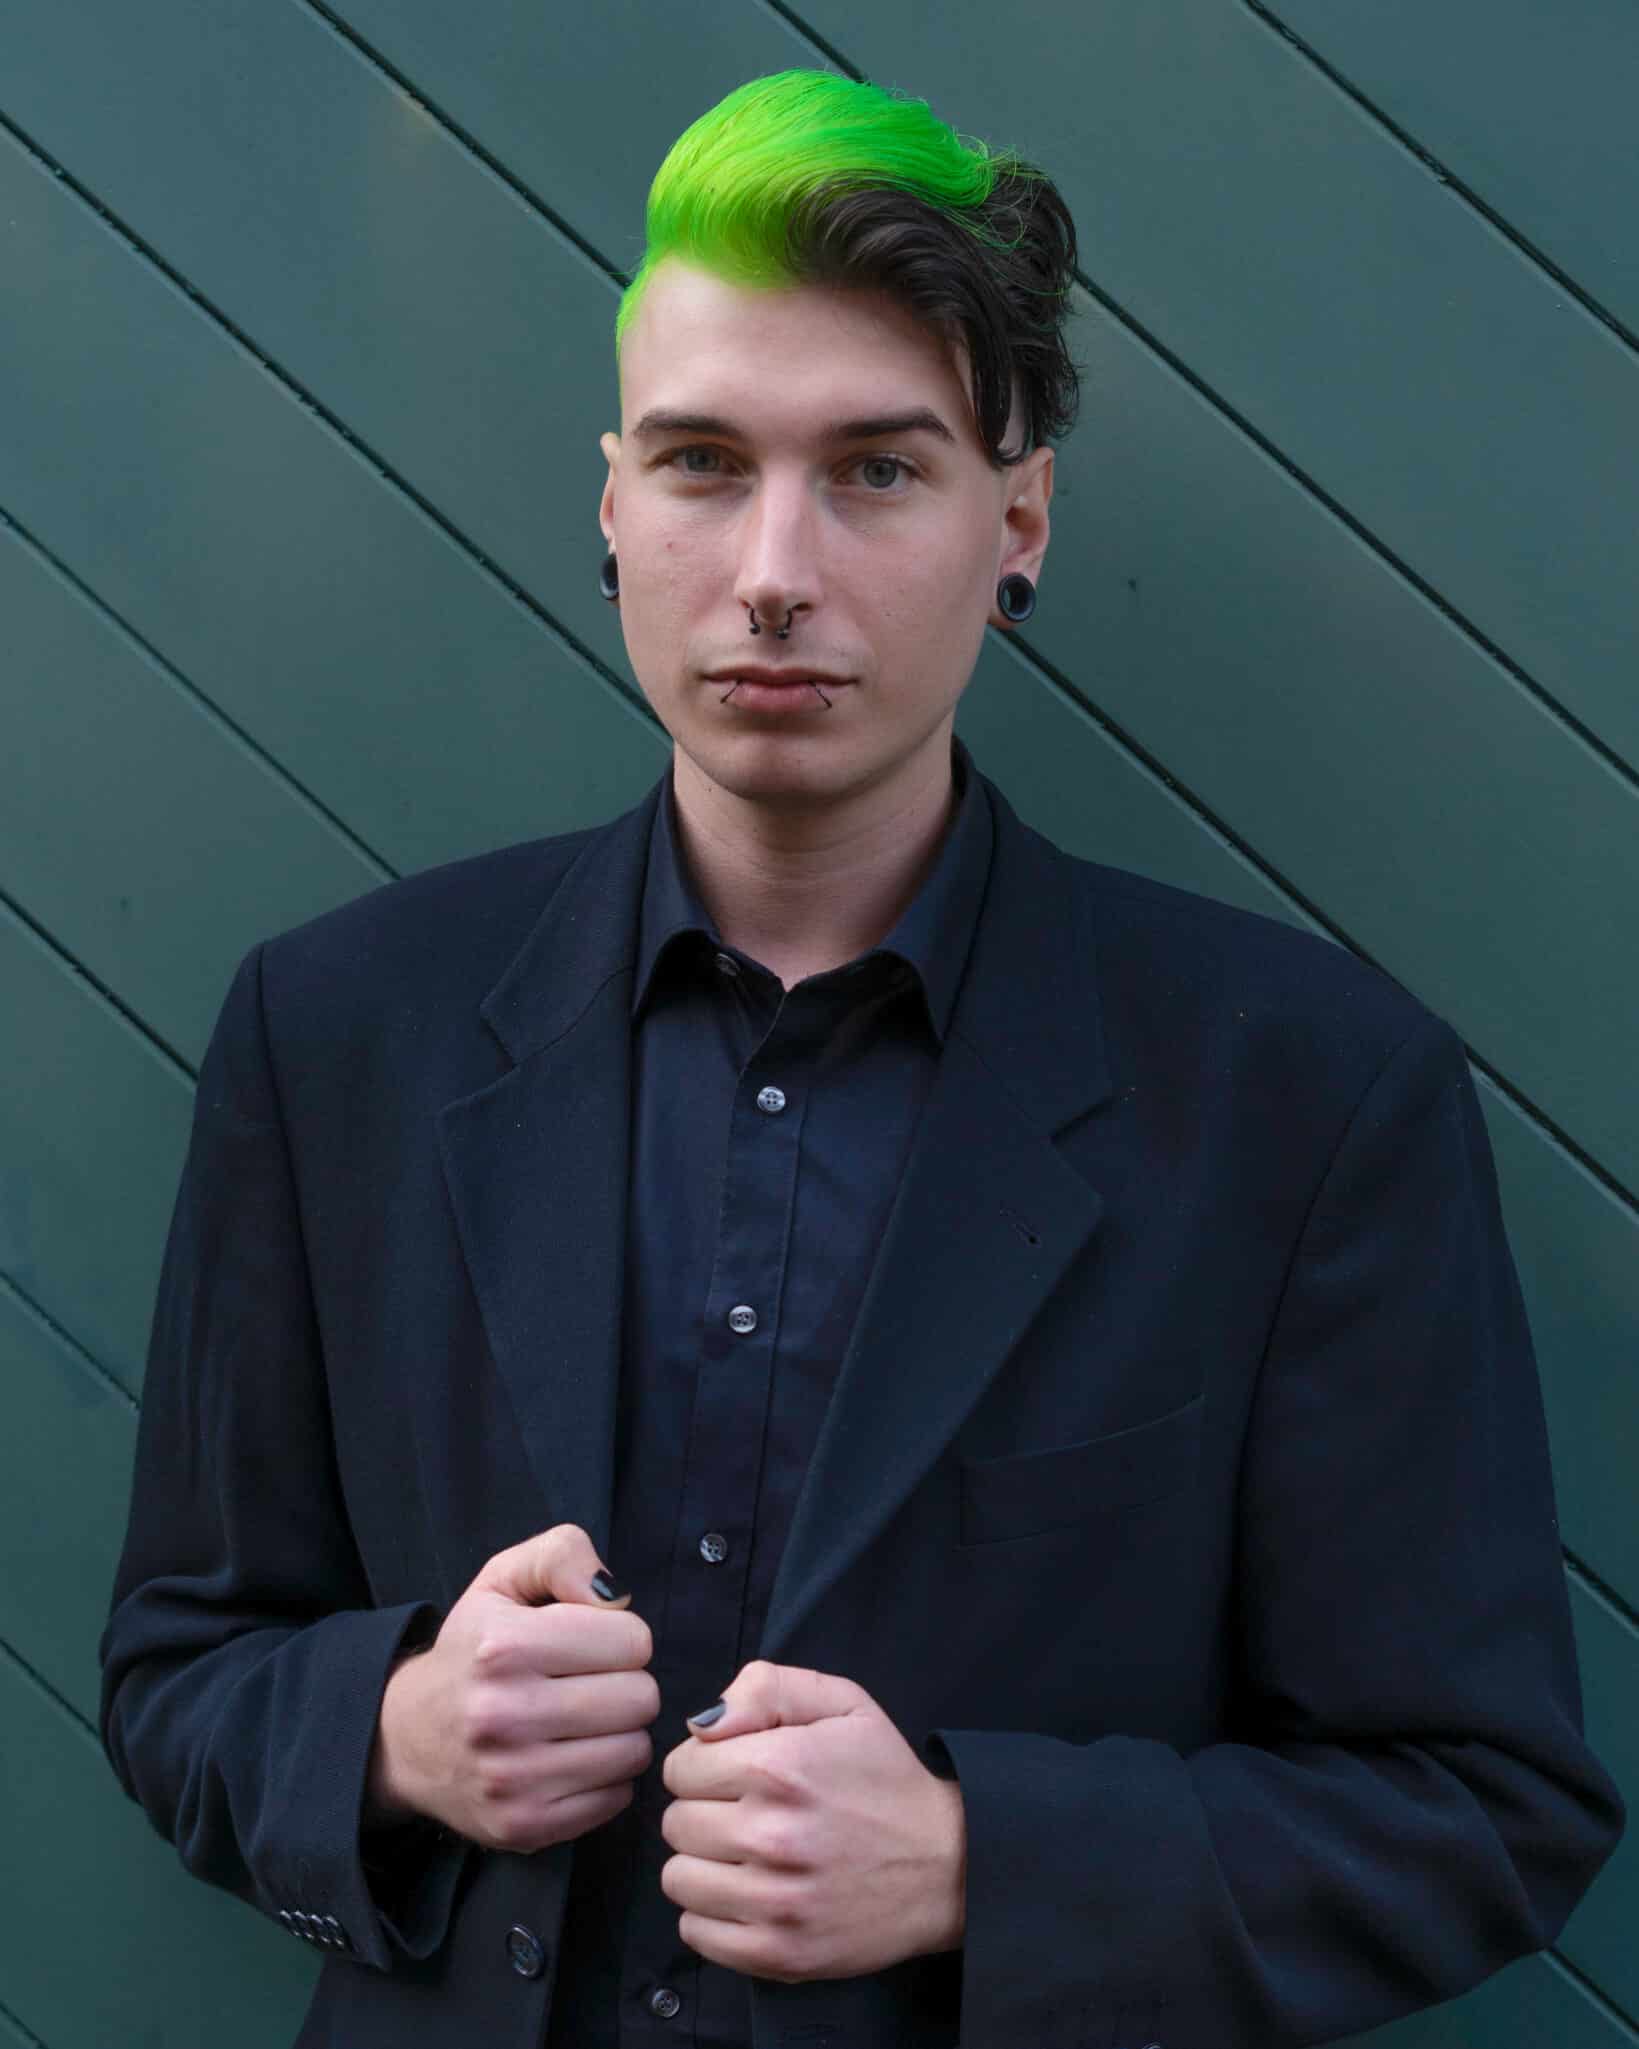 zelené vlasy foto